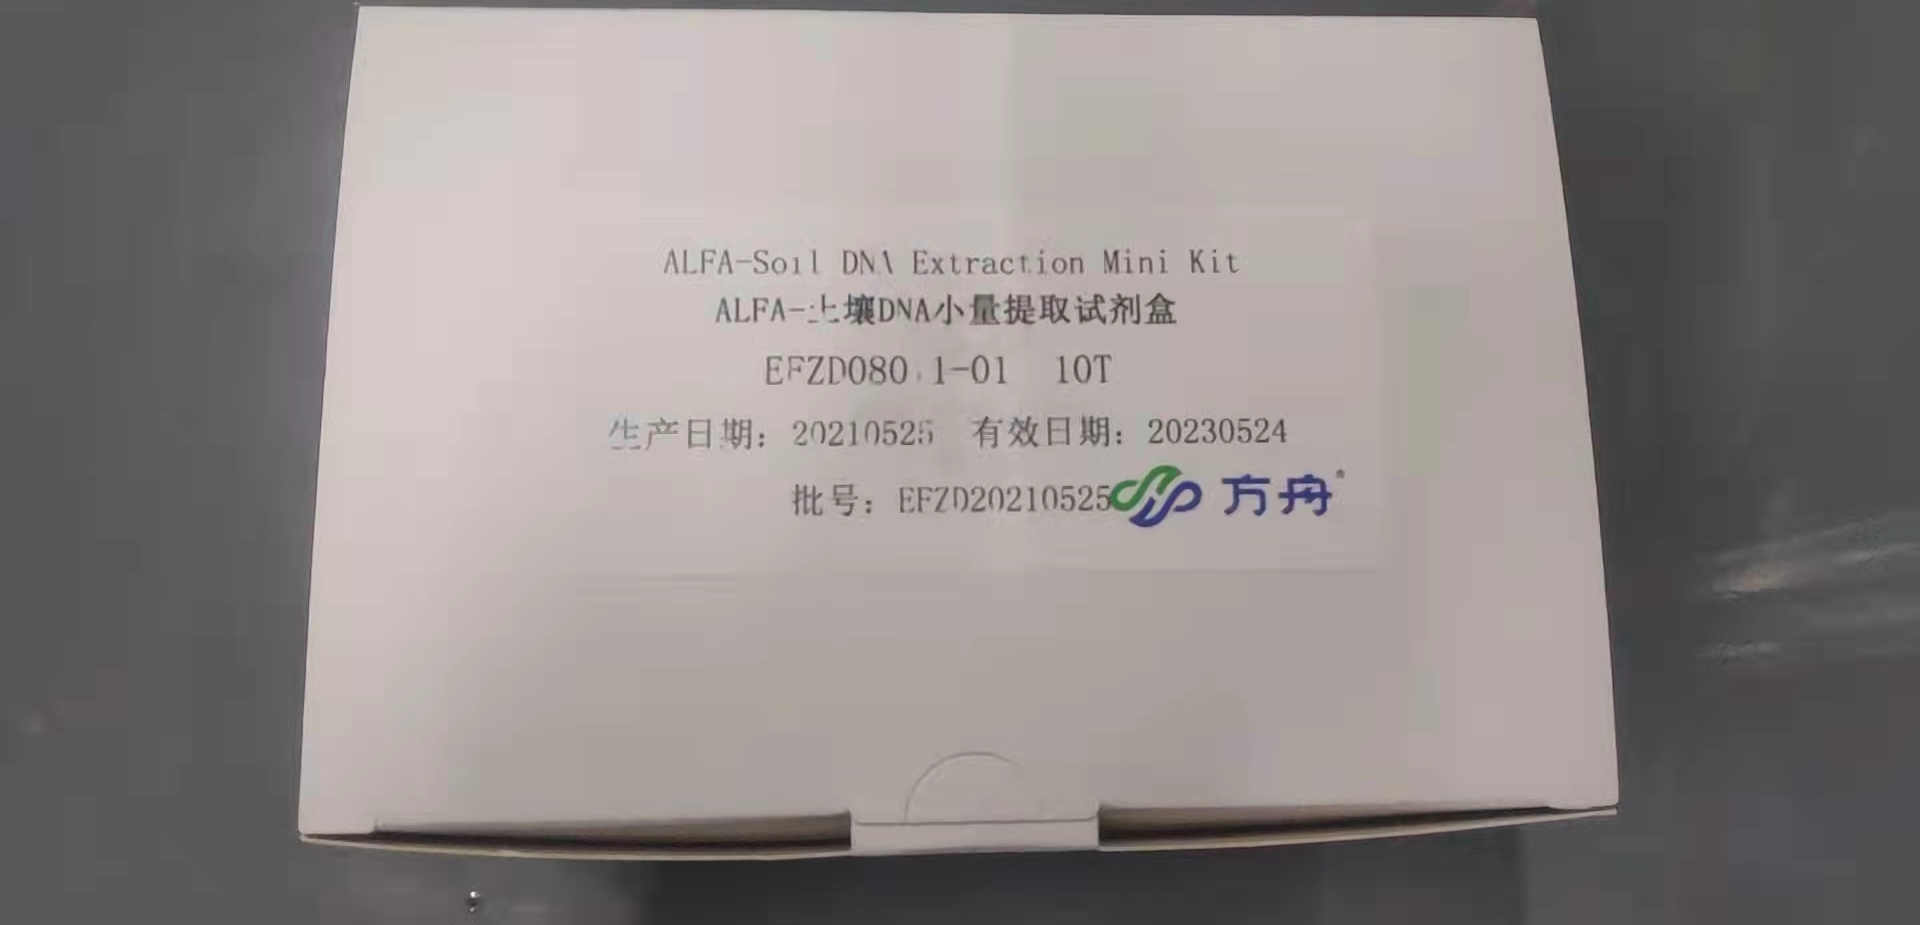 ALFA-土壤DNA小量提取试剂盒EFZD080